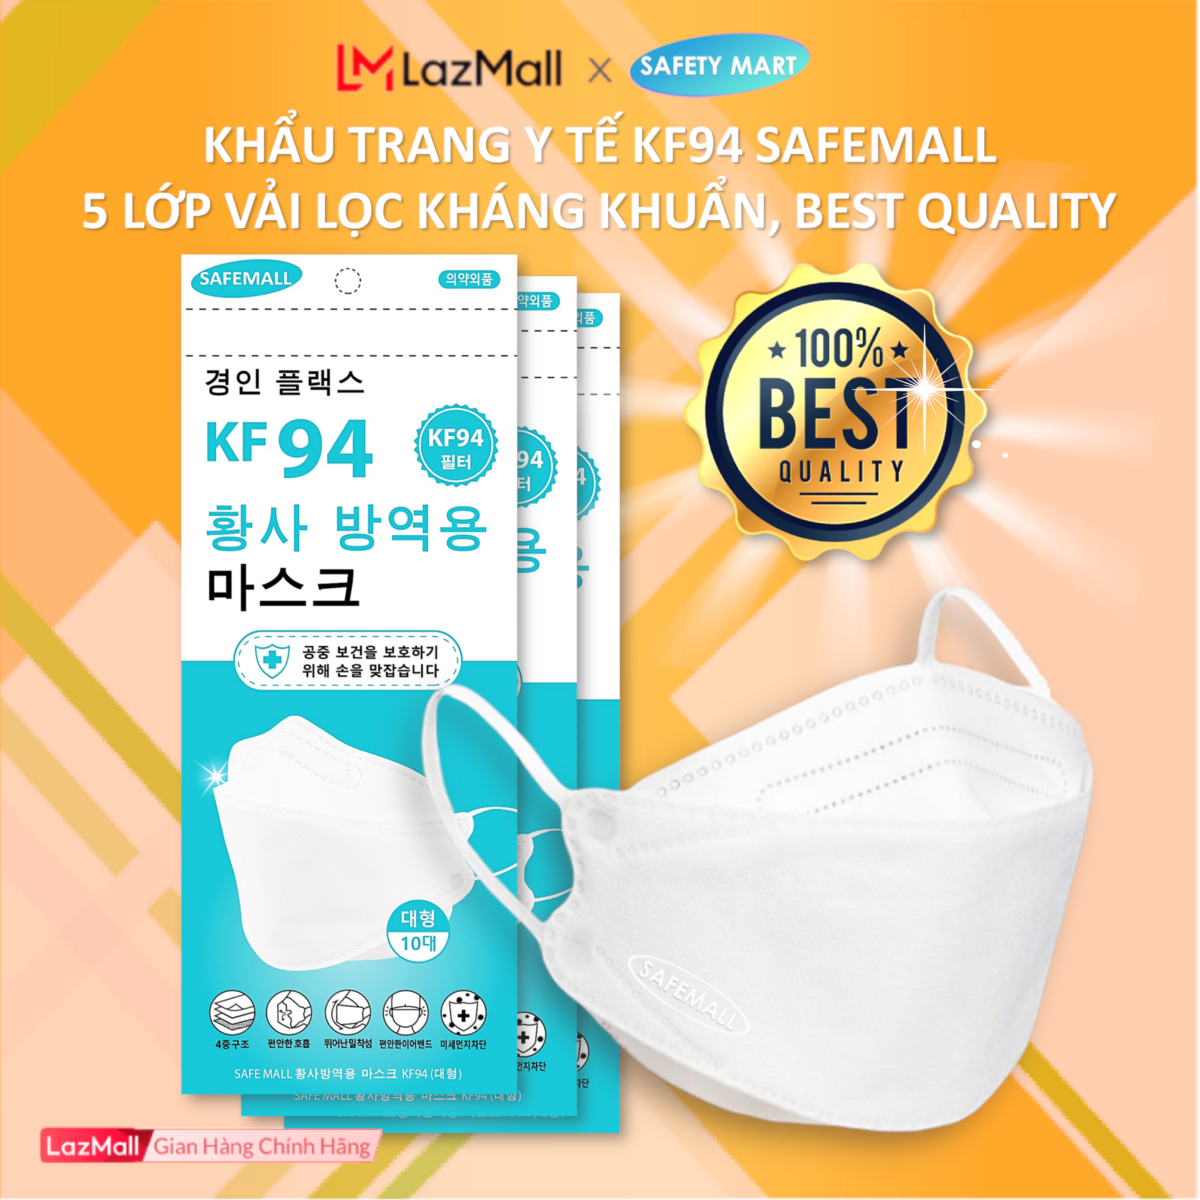 [5 LỚP LỌC] Thùng 300/200 chiếc Khẩu trang KF94 SafeMall 4D Mask (Màu trắng / xanh / xám) Công nghệ Hàn Quốc 5 lớp vải kháng khuẩn, khẩu trang y tế cao cấp - Hàng Chính Hãng Safety Mart Official